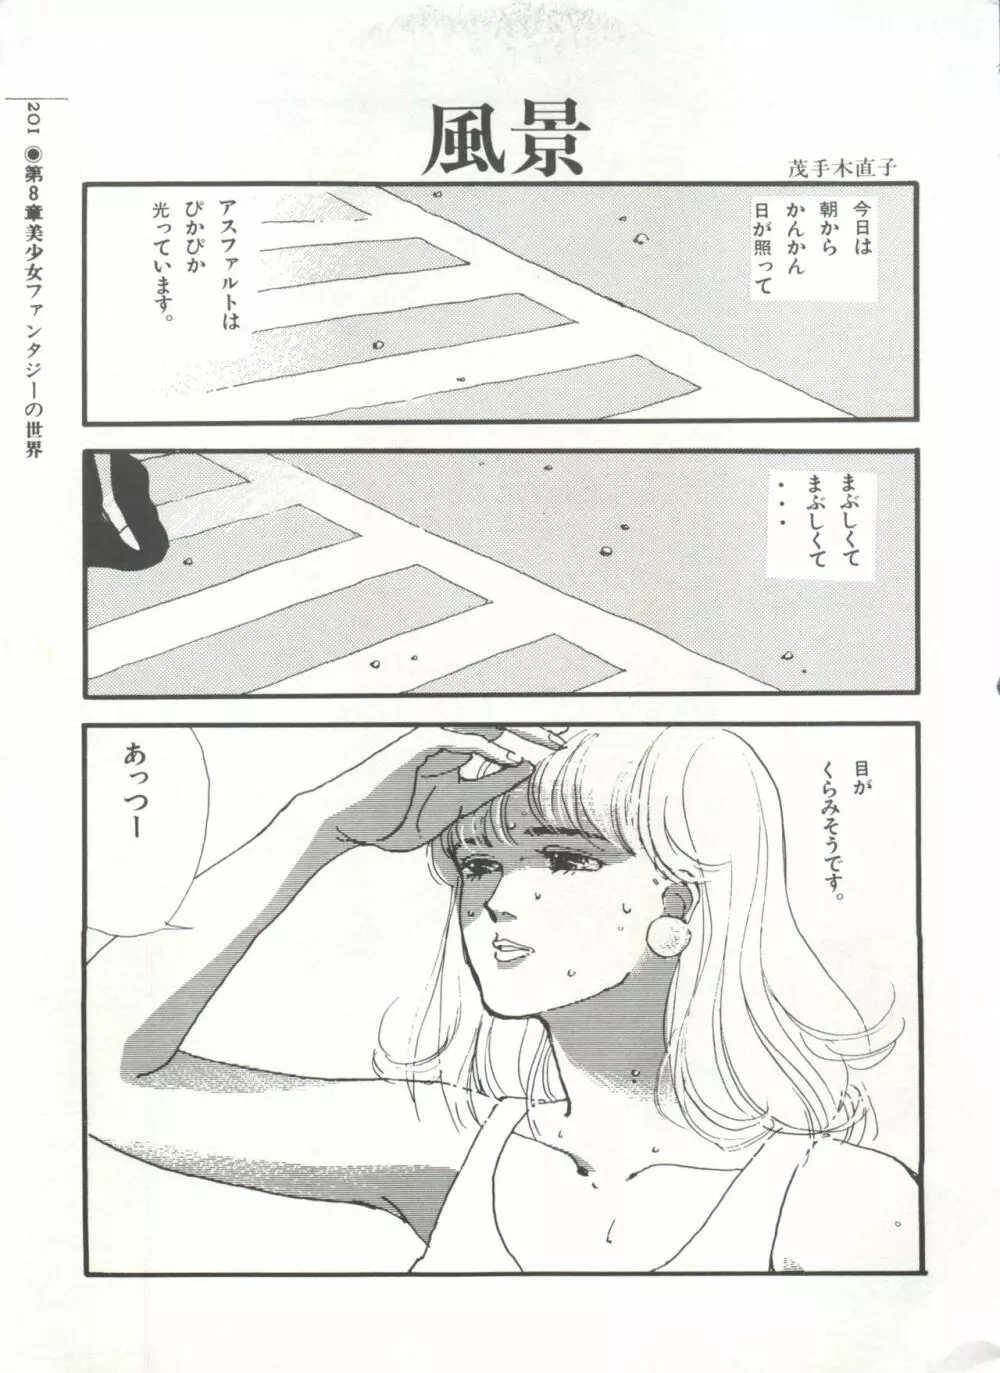 [Anthology] 美少女症候群(2) Lolita syndrome (よろず) 204ページ